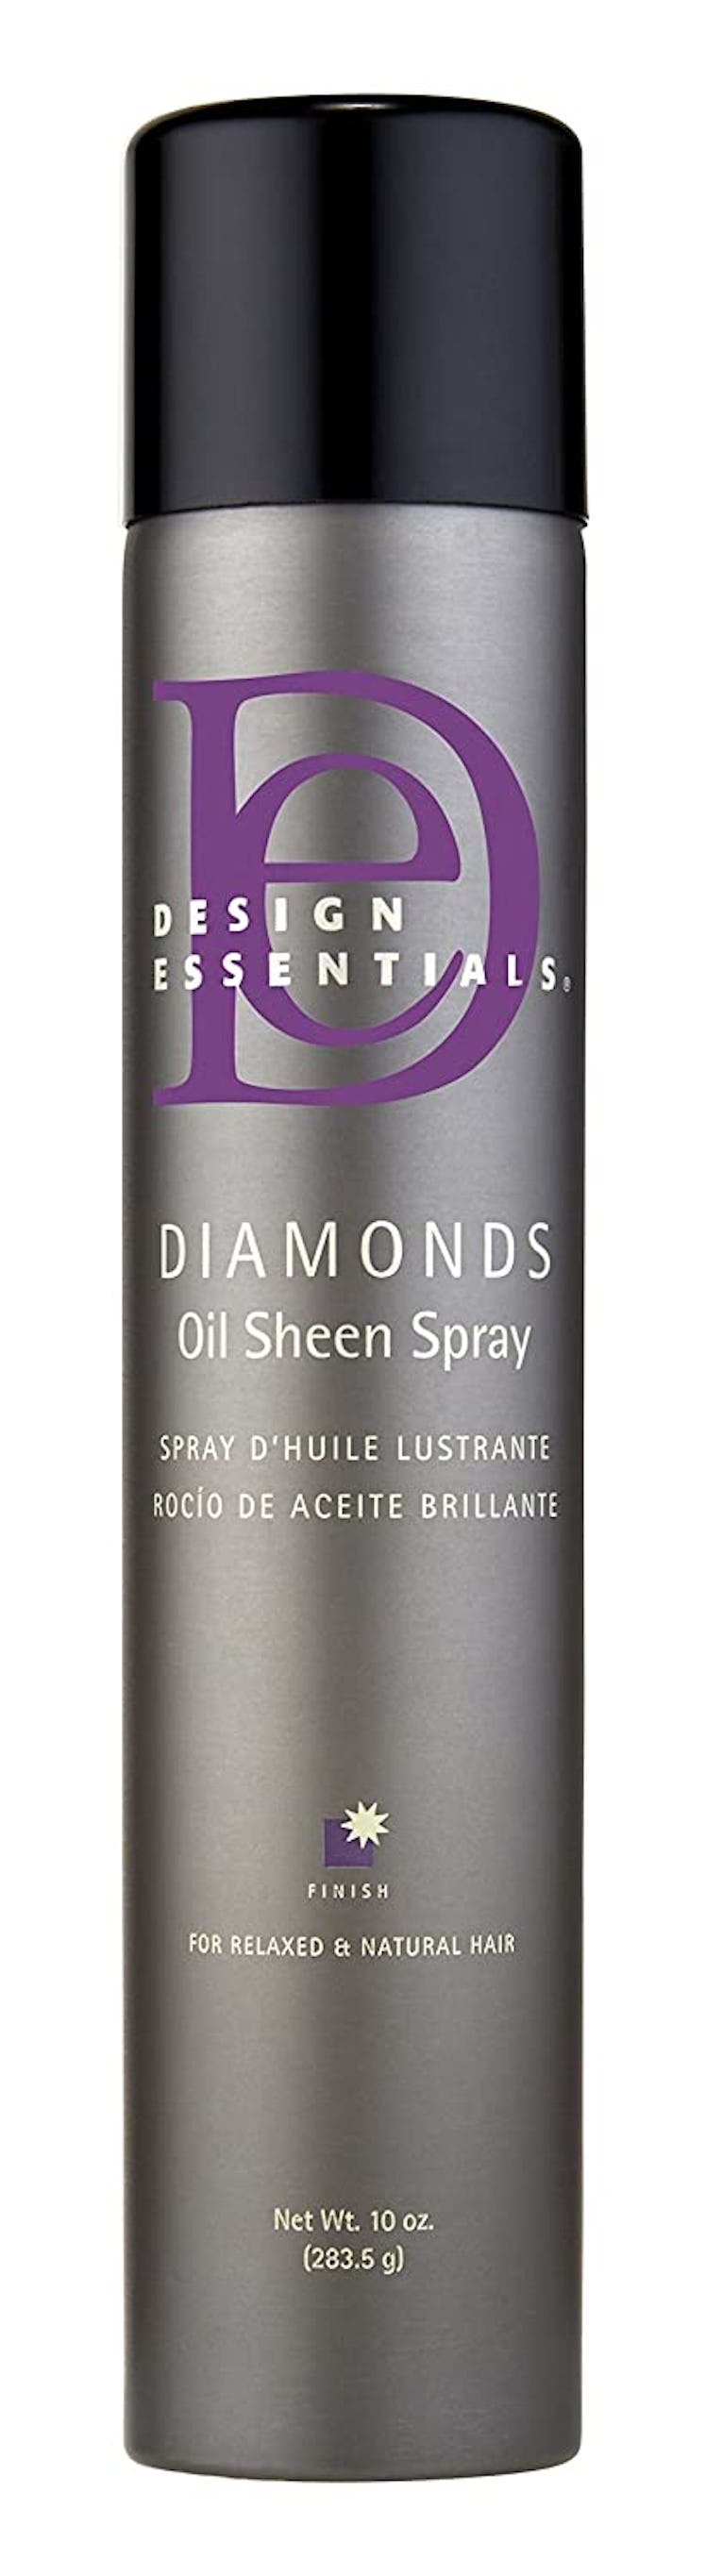 DIAMONDS Oil Sheen Spray